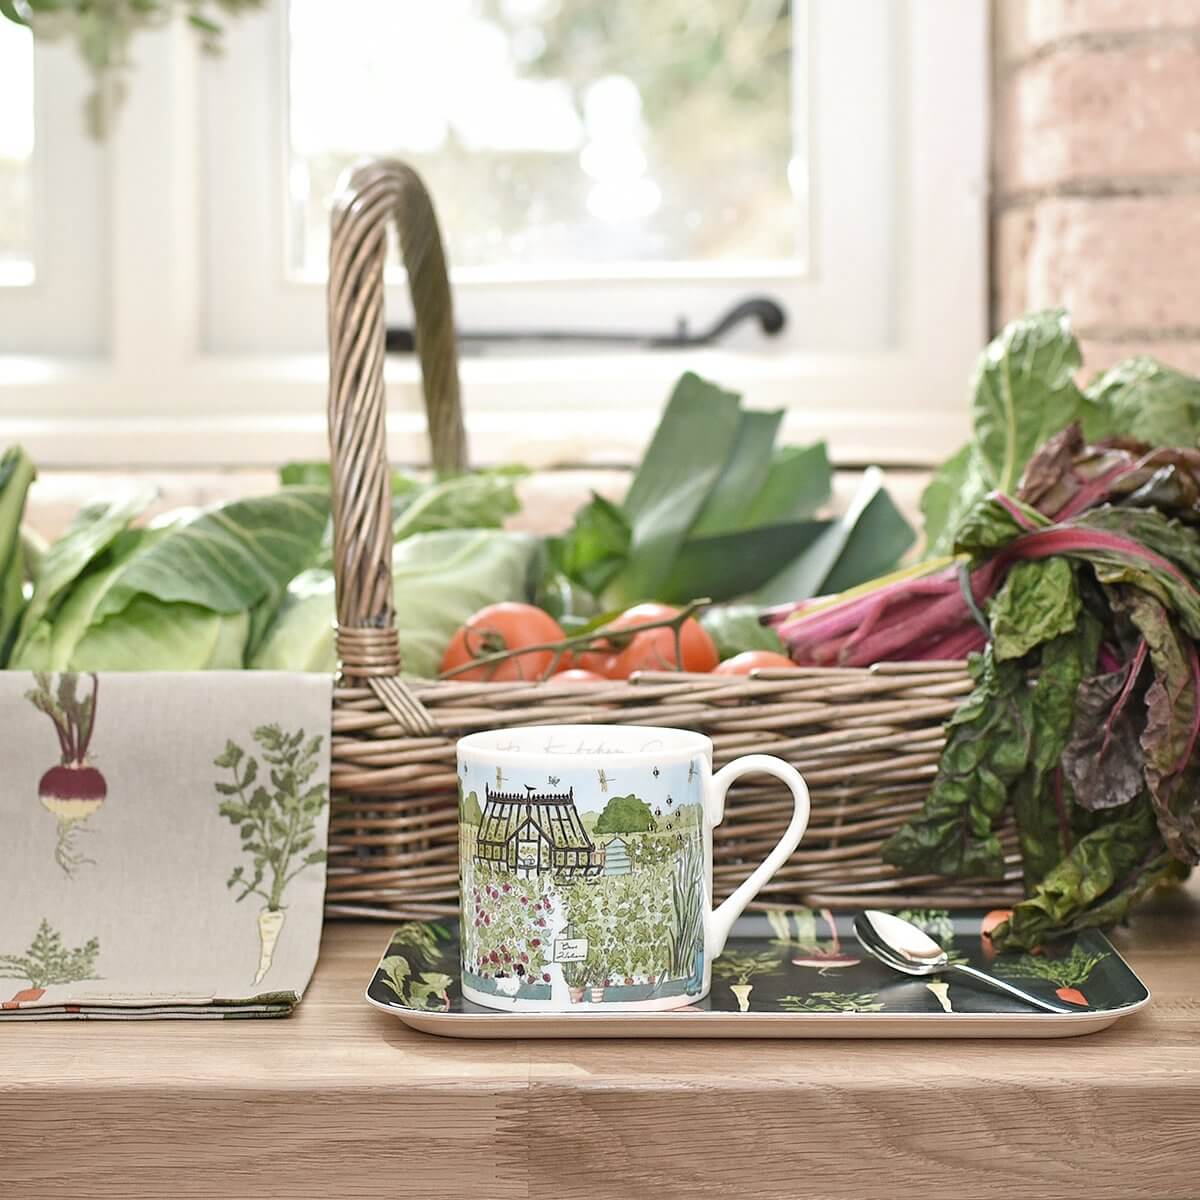 The Kitchen Garden Mug by Sophie Allport